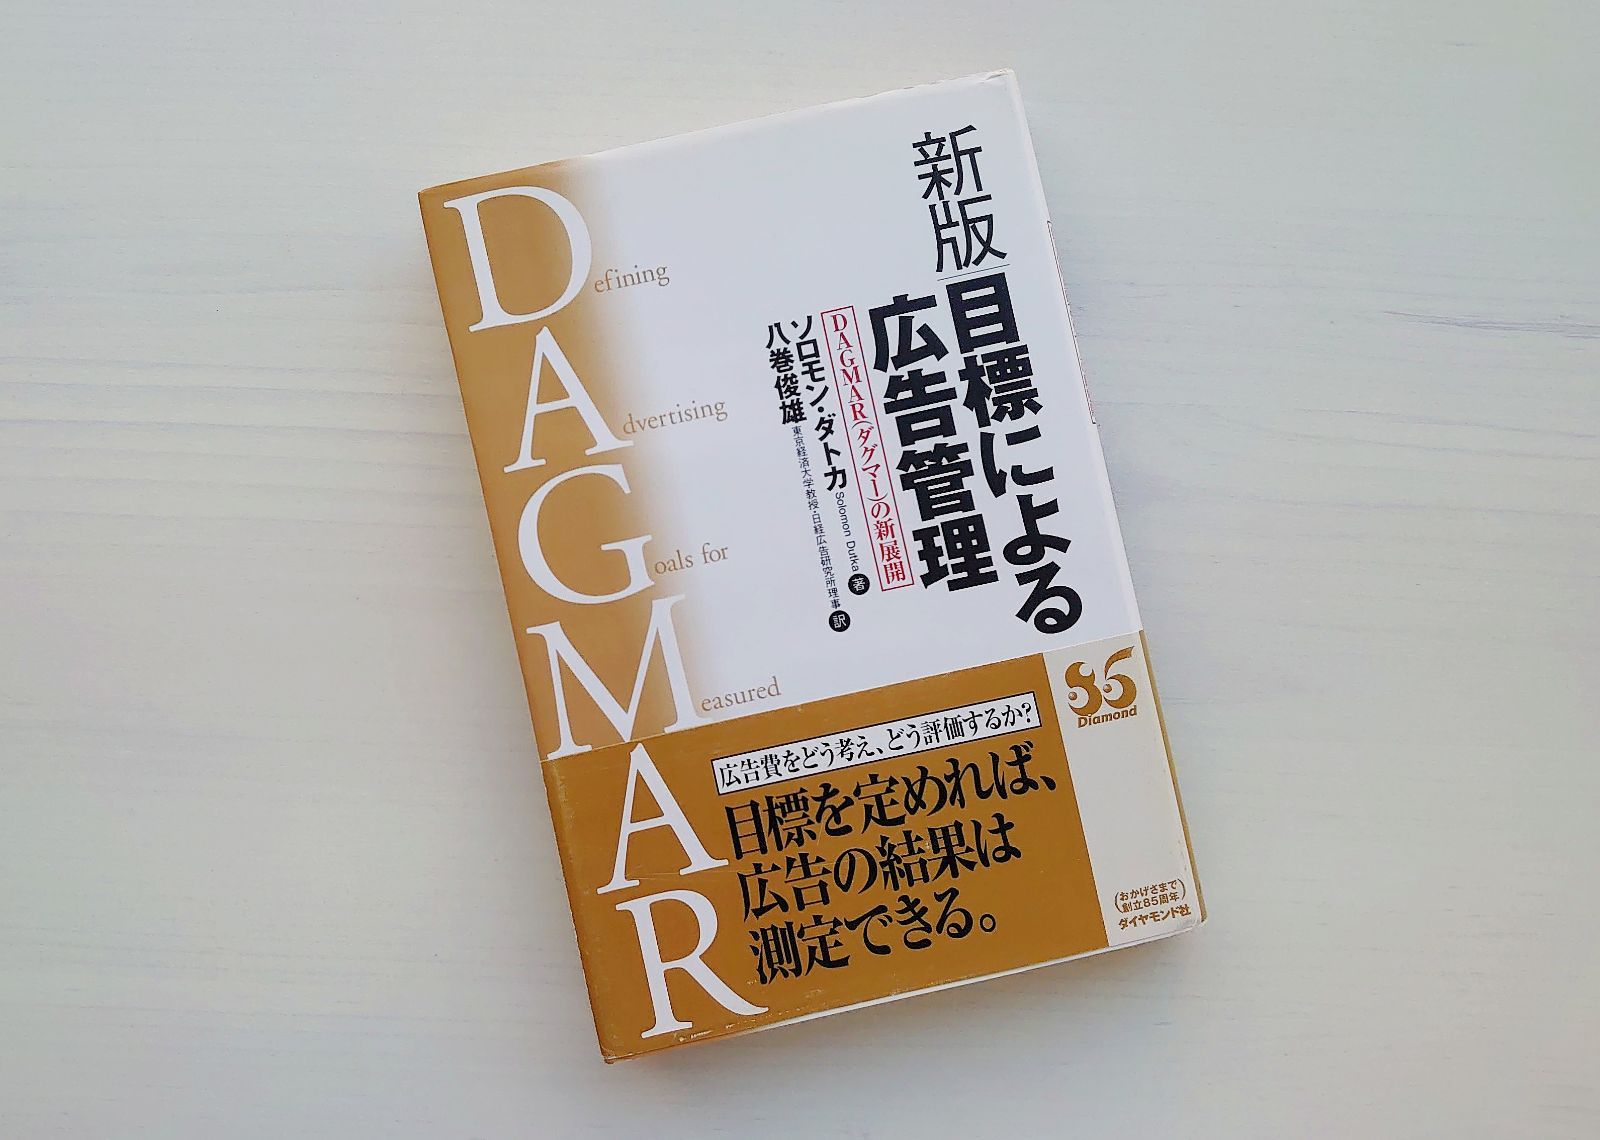 新版 目標による広告管理?DAGMAR(ダグマー)の新展開 - ビジネス、経済